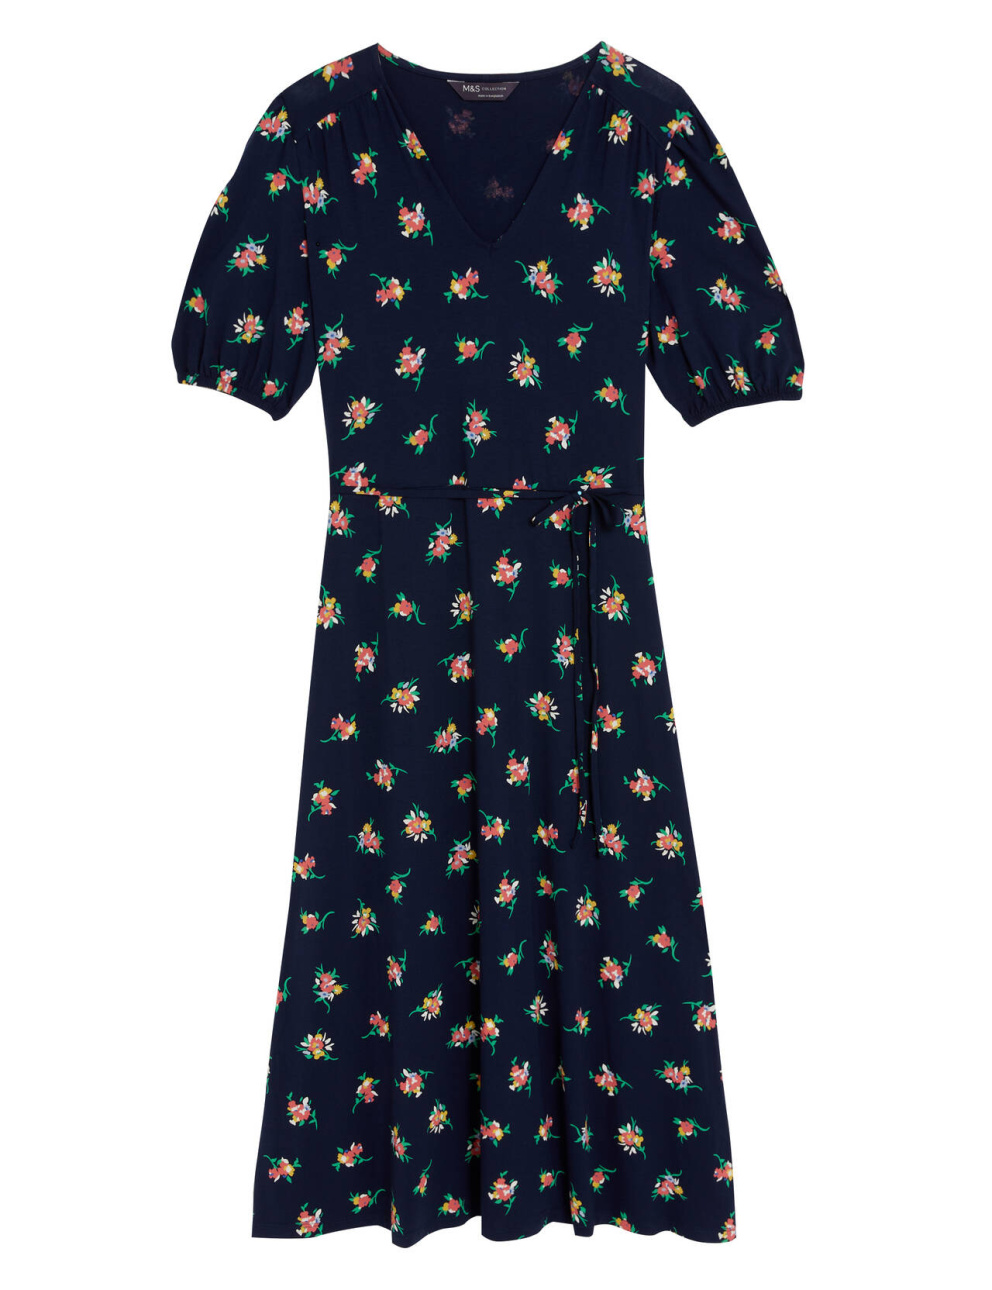 Šaty s květy, Marks & Spencer, 999 Kč